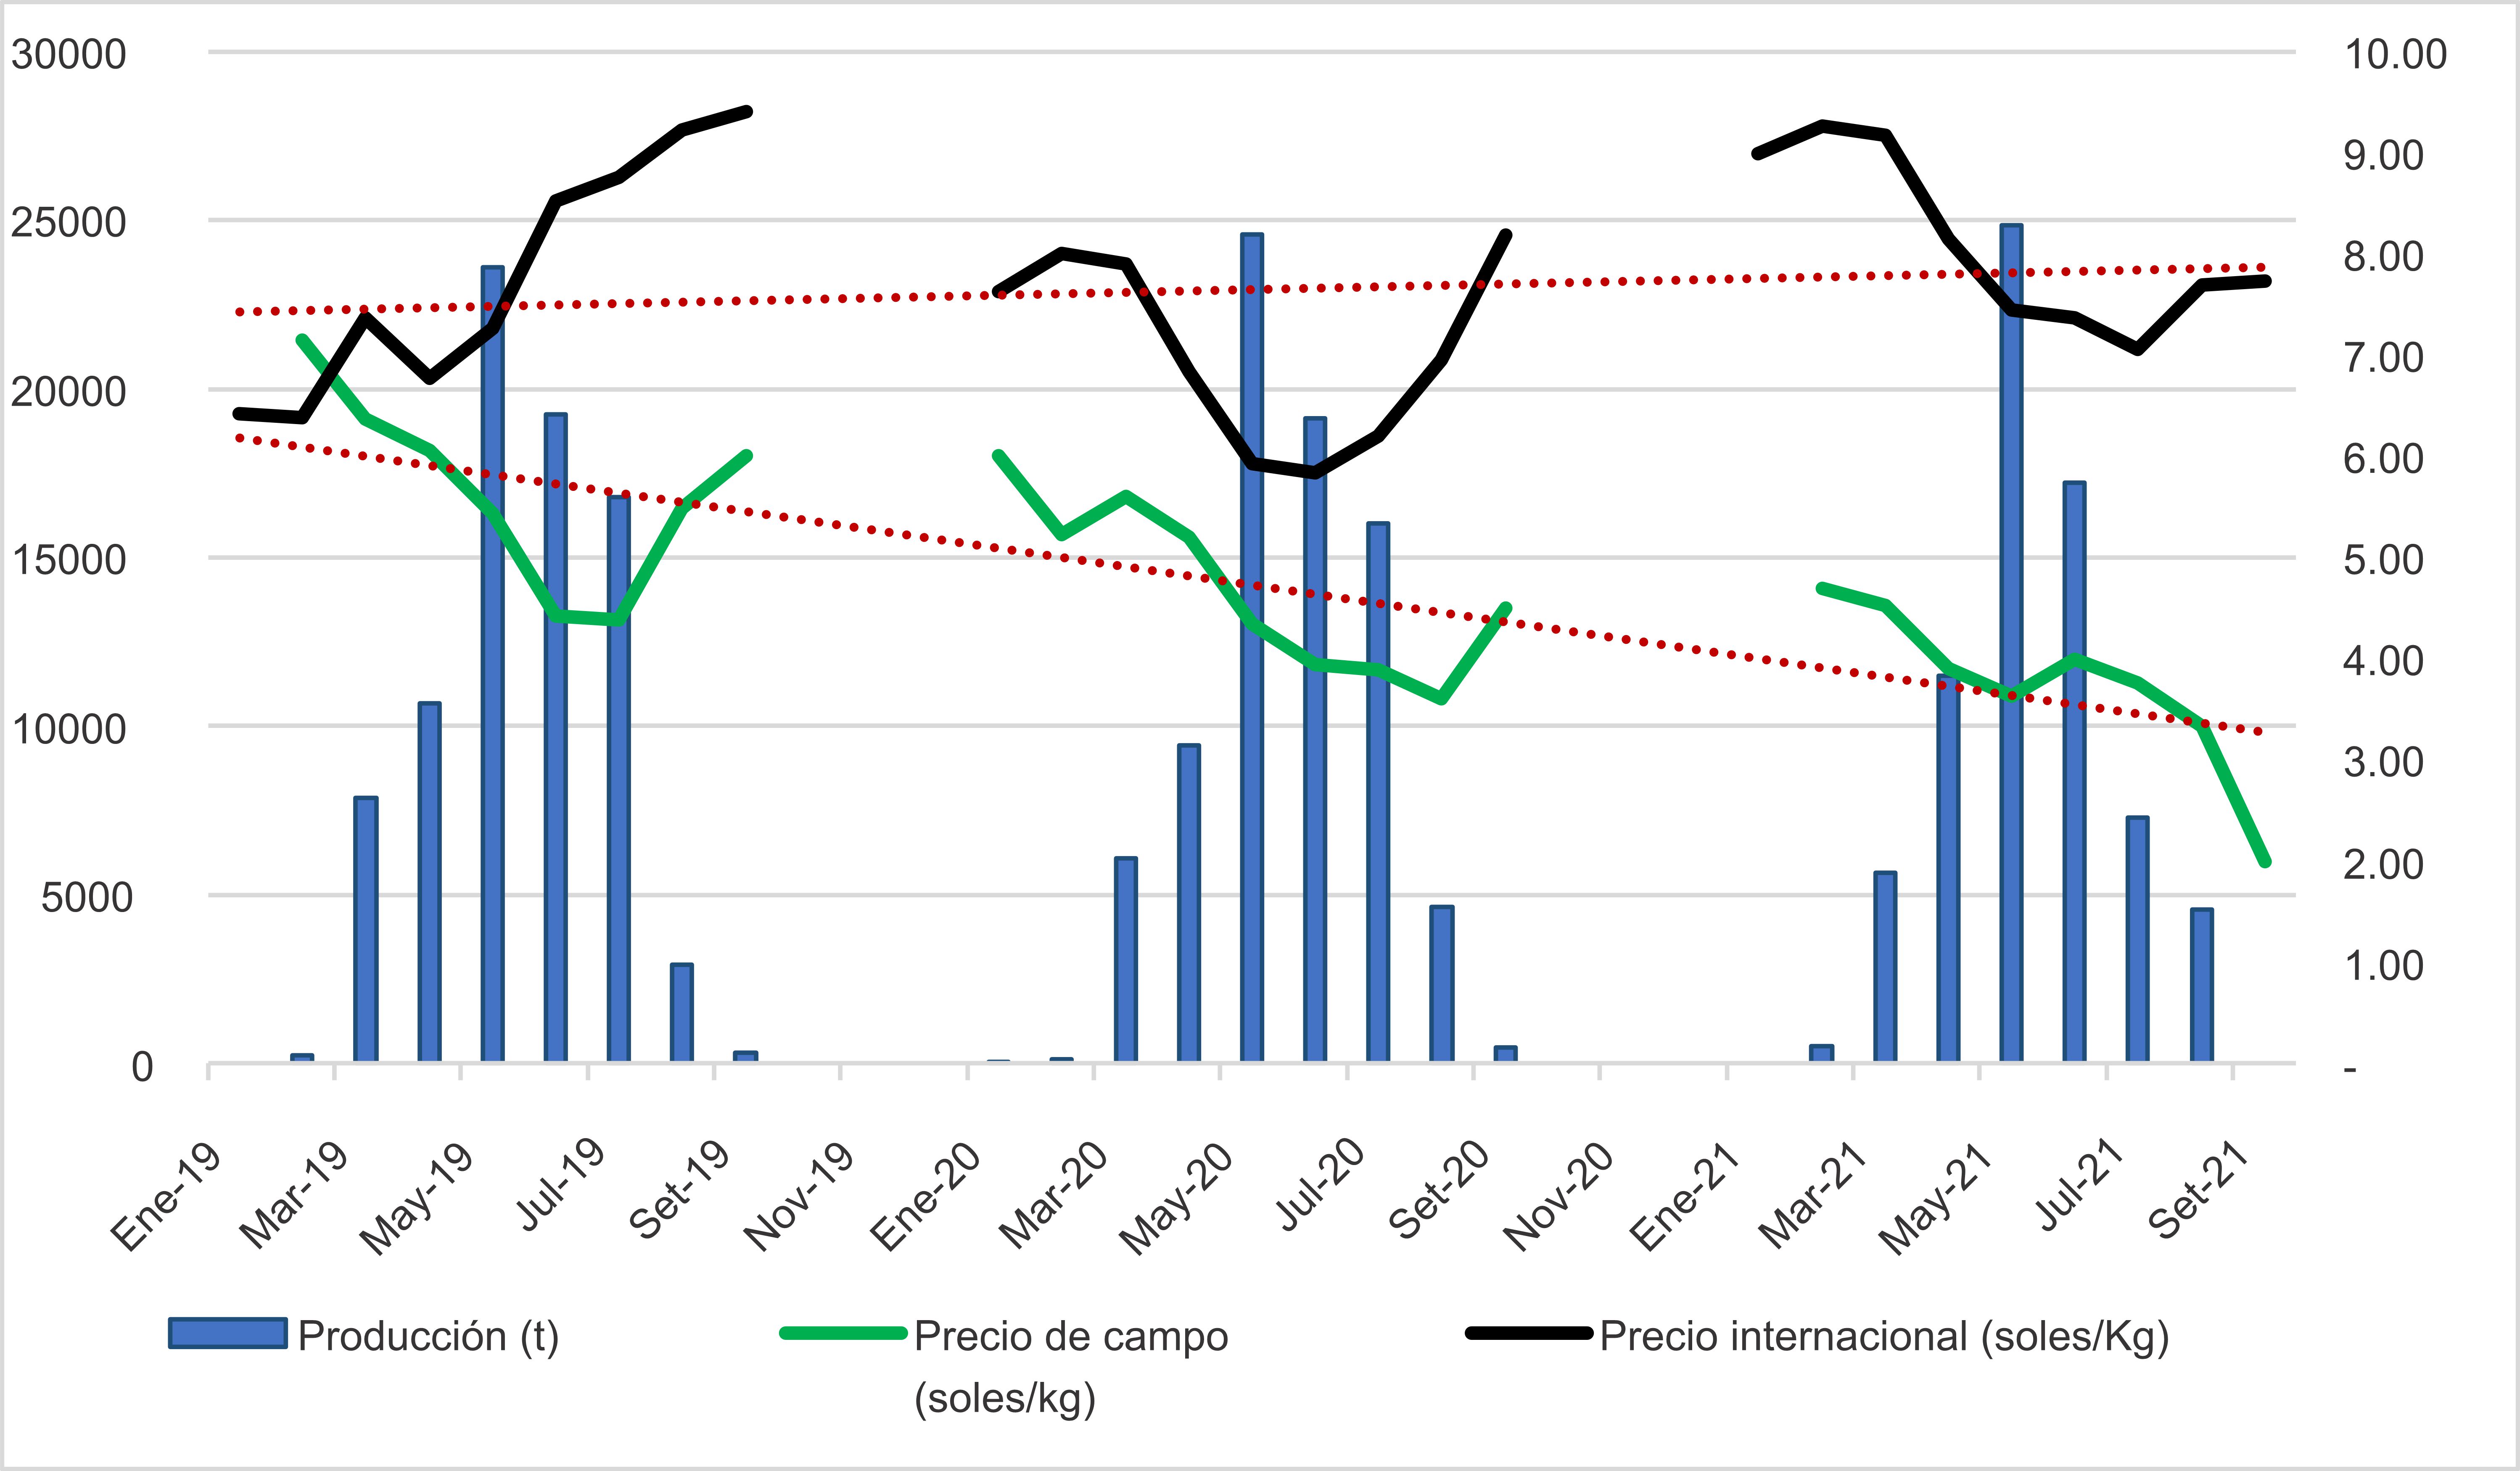 Producción de palta de la región Ica, precio en chacra y precio internacional durante las campañas 2019, 2020 y 2021



